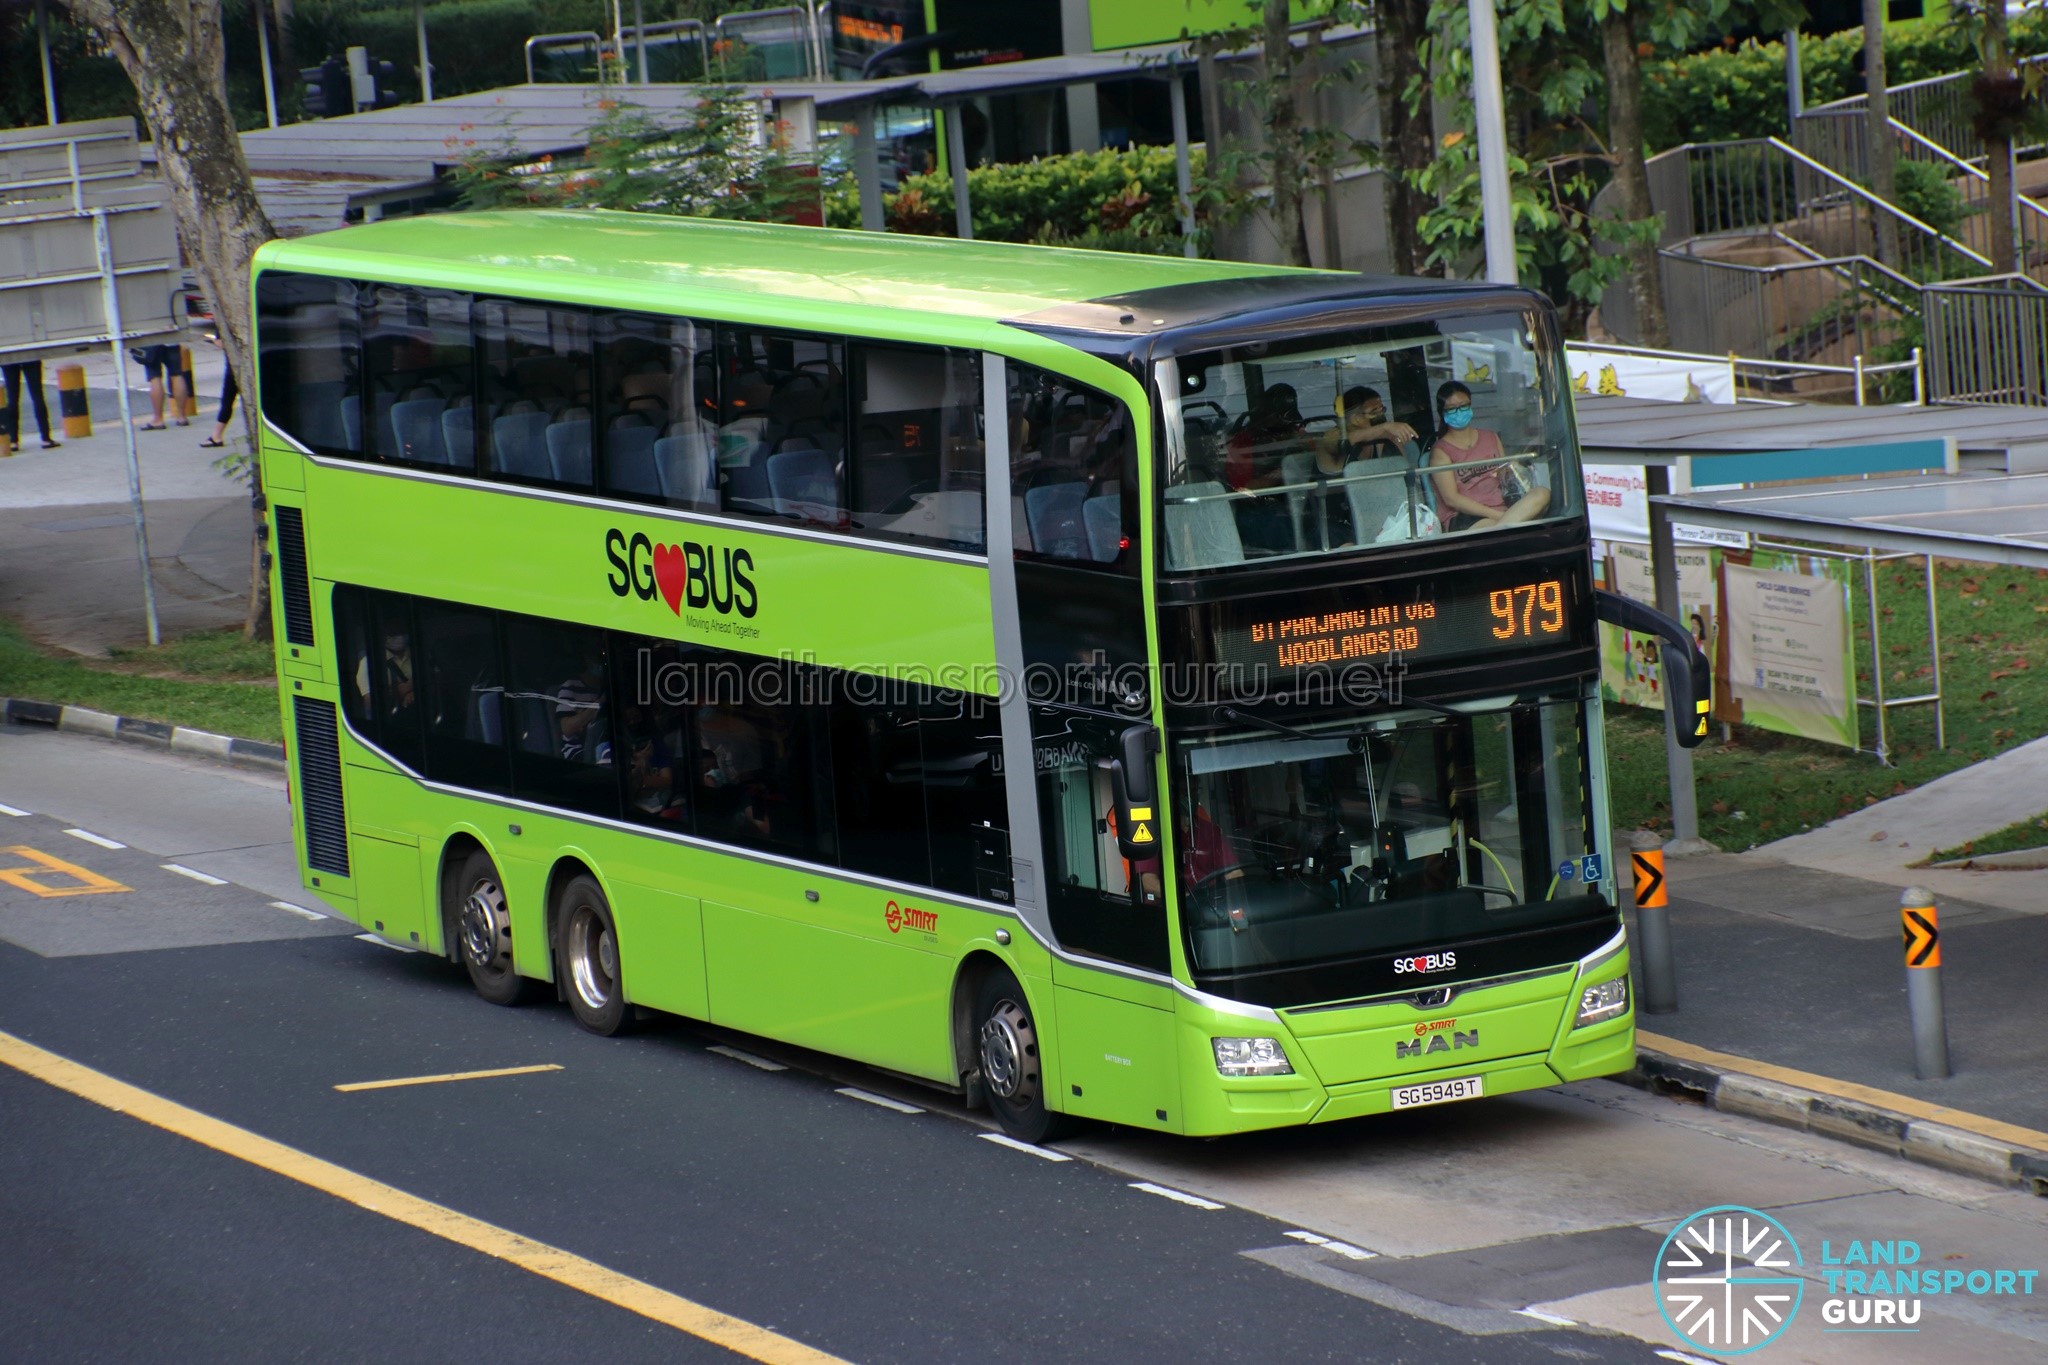 SMRT Bus Service 979